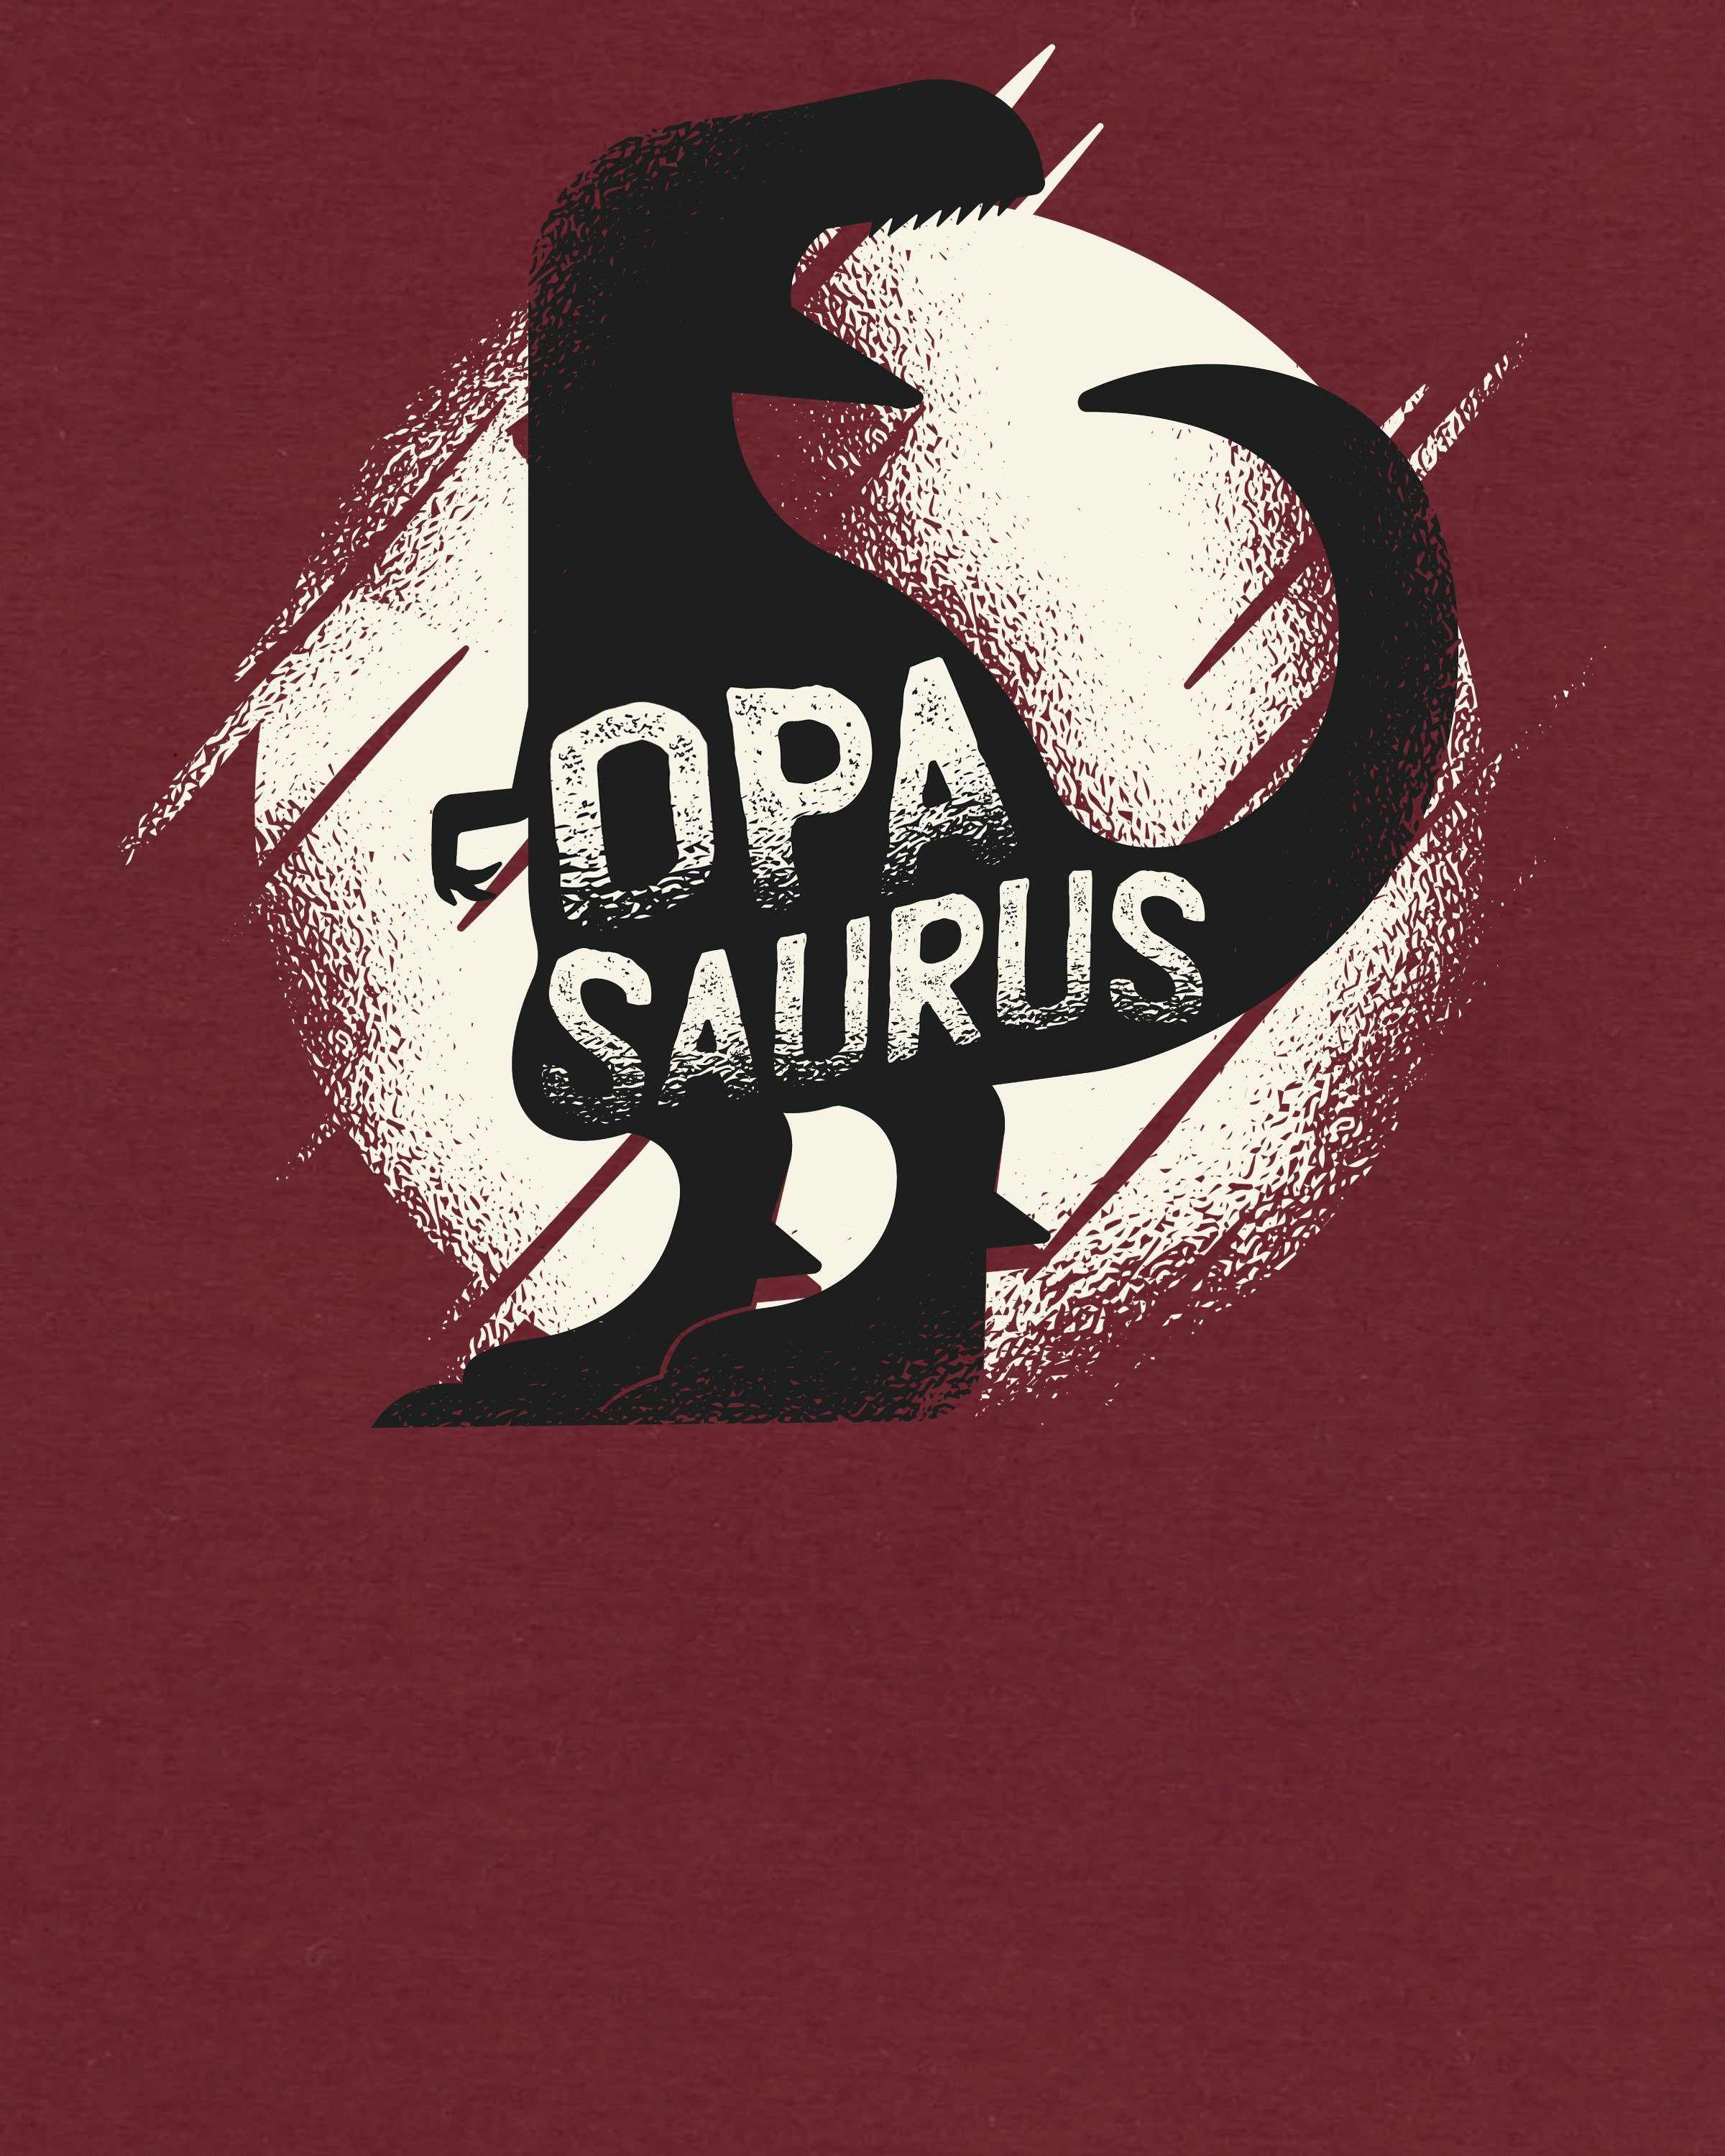 (1-tlg) wat? Print-Shirt Apparel weinrot Opasaurus